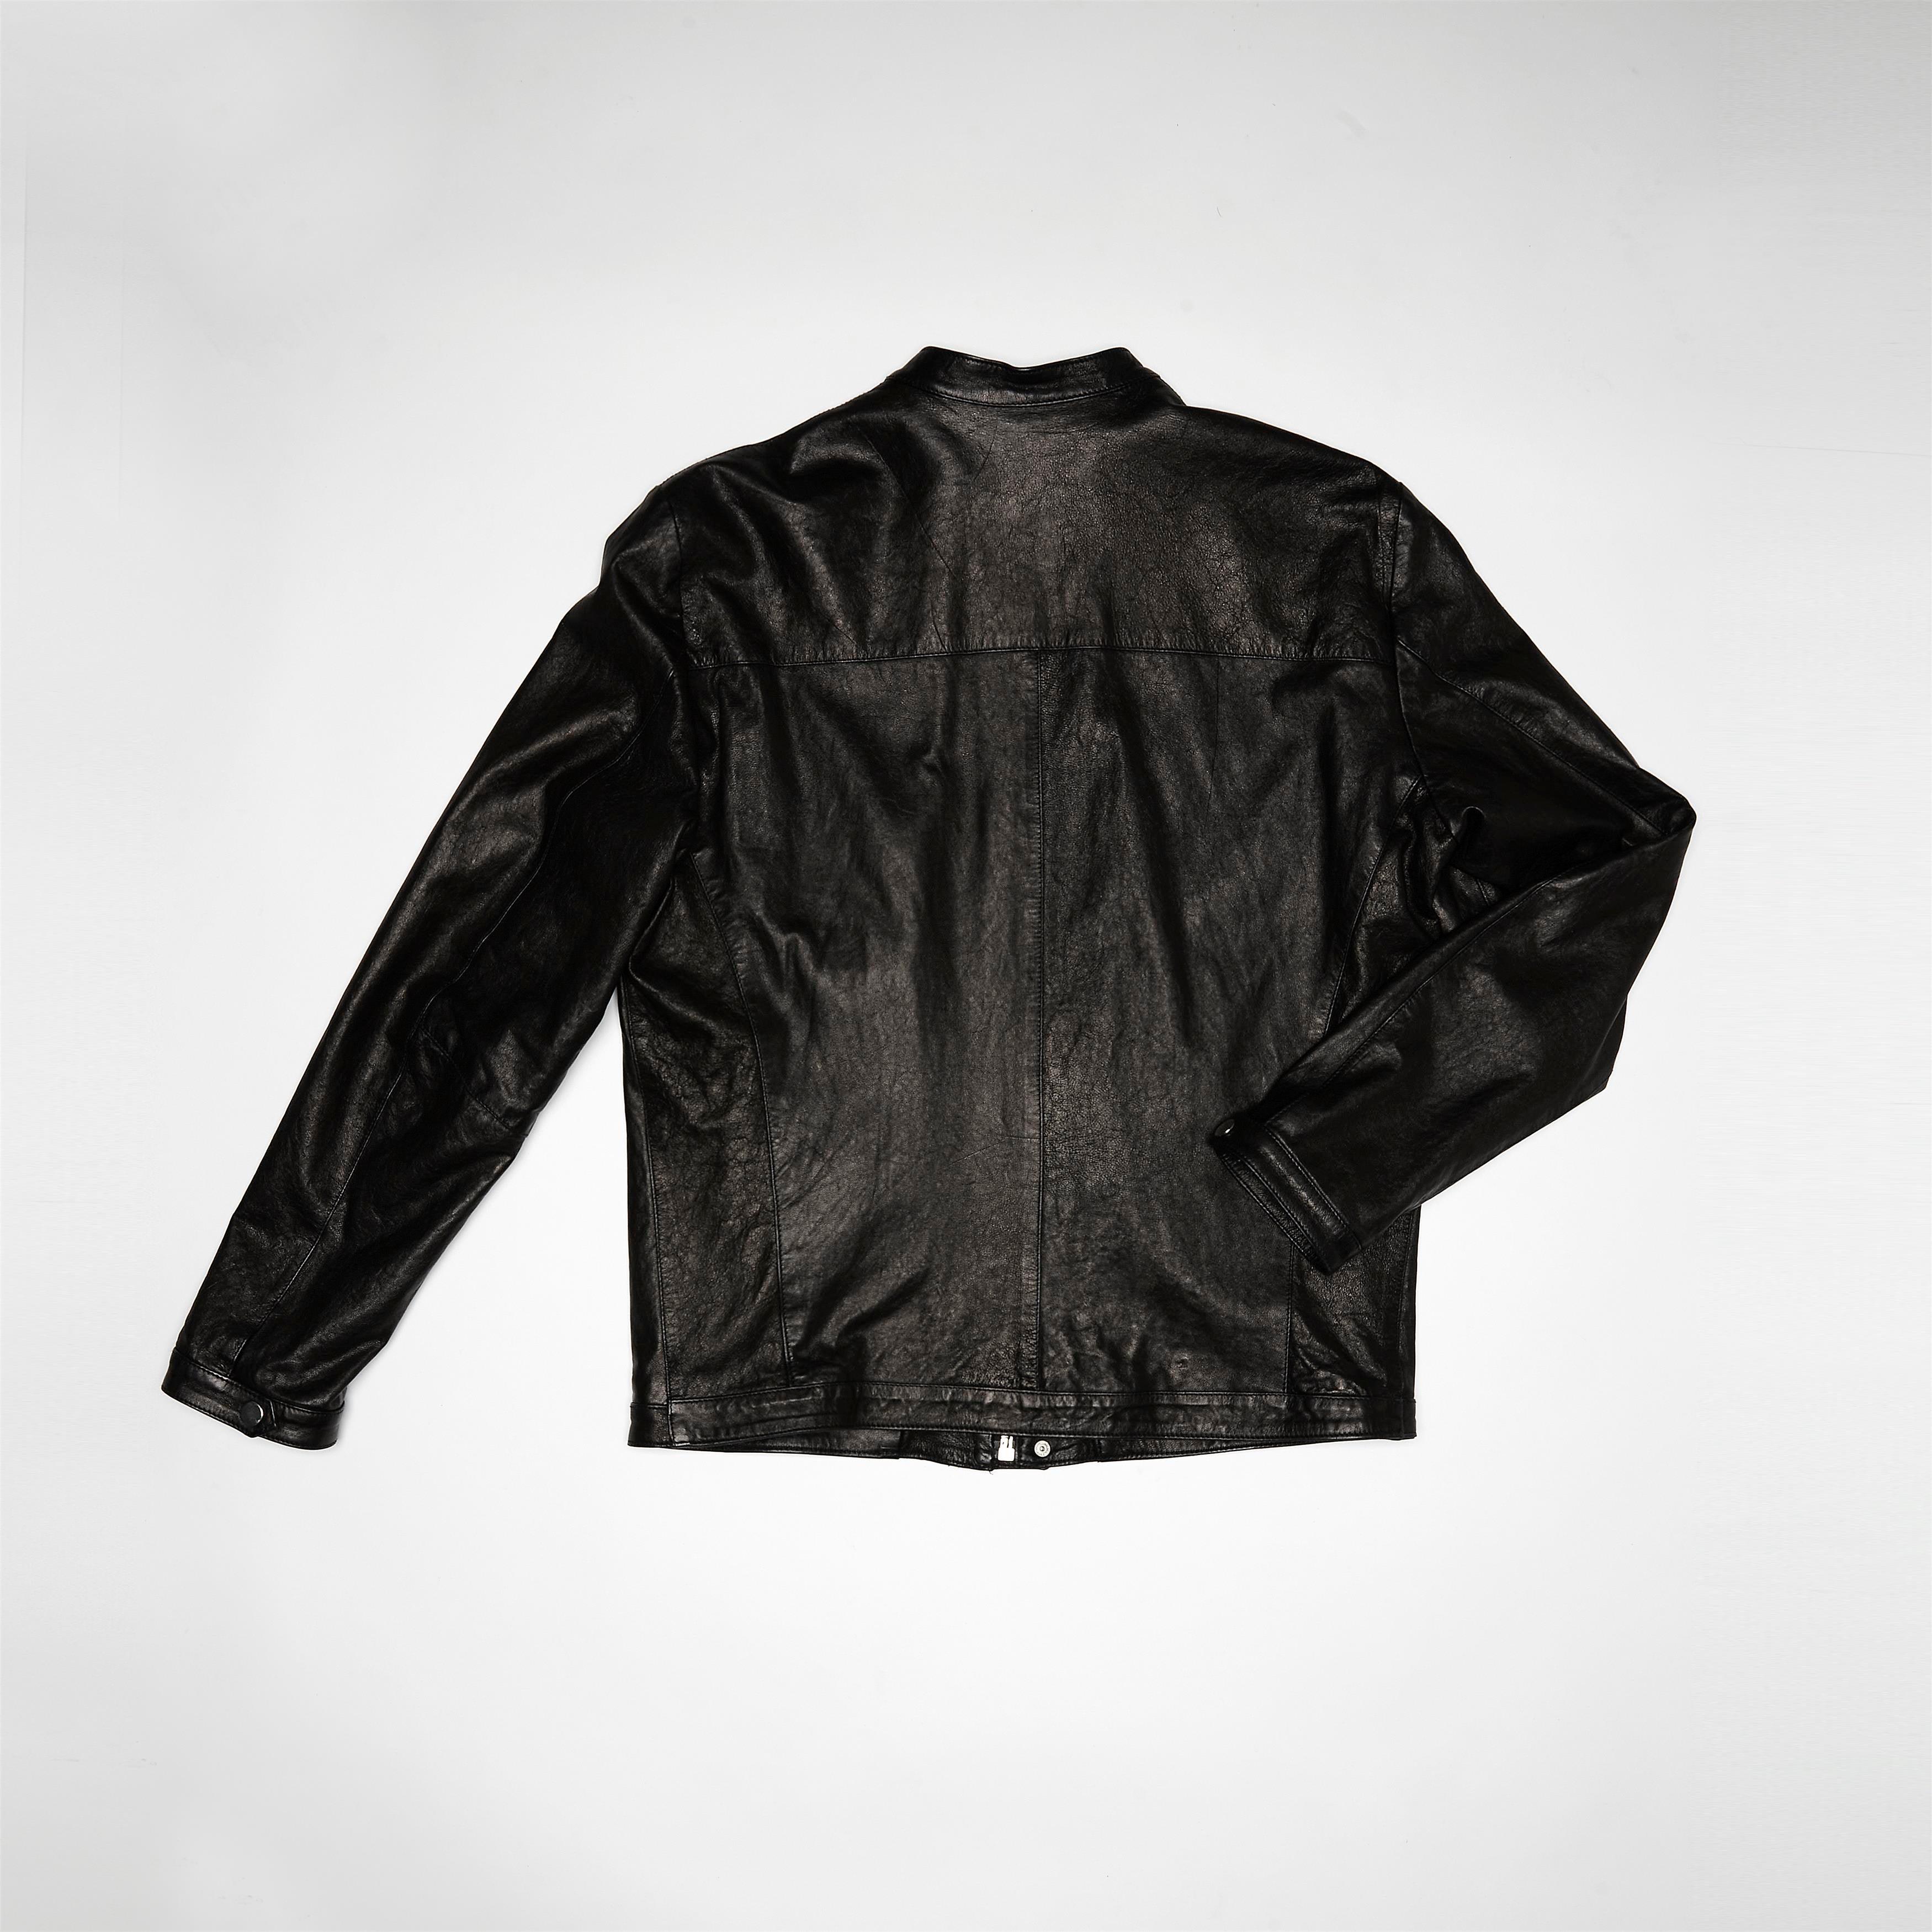 A.S.98 Leather Jacket - Kurt - A.S. 98 - 